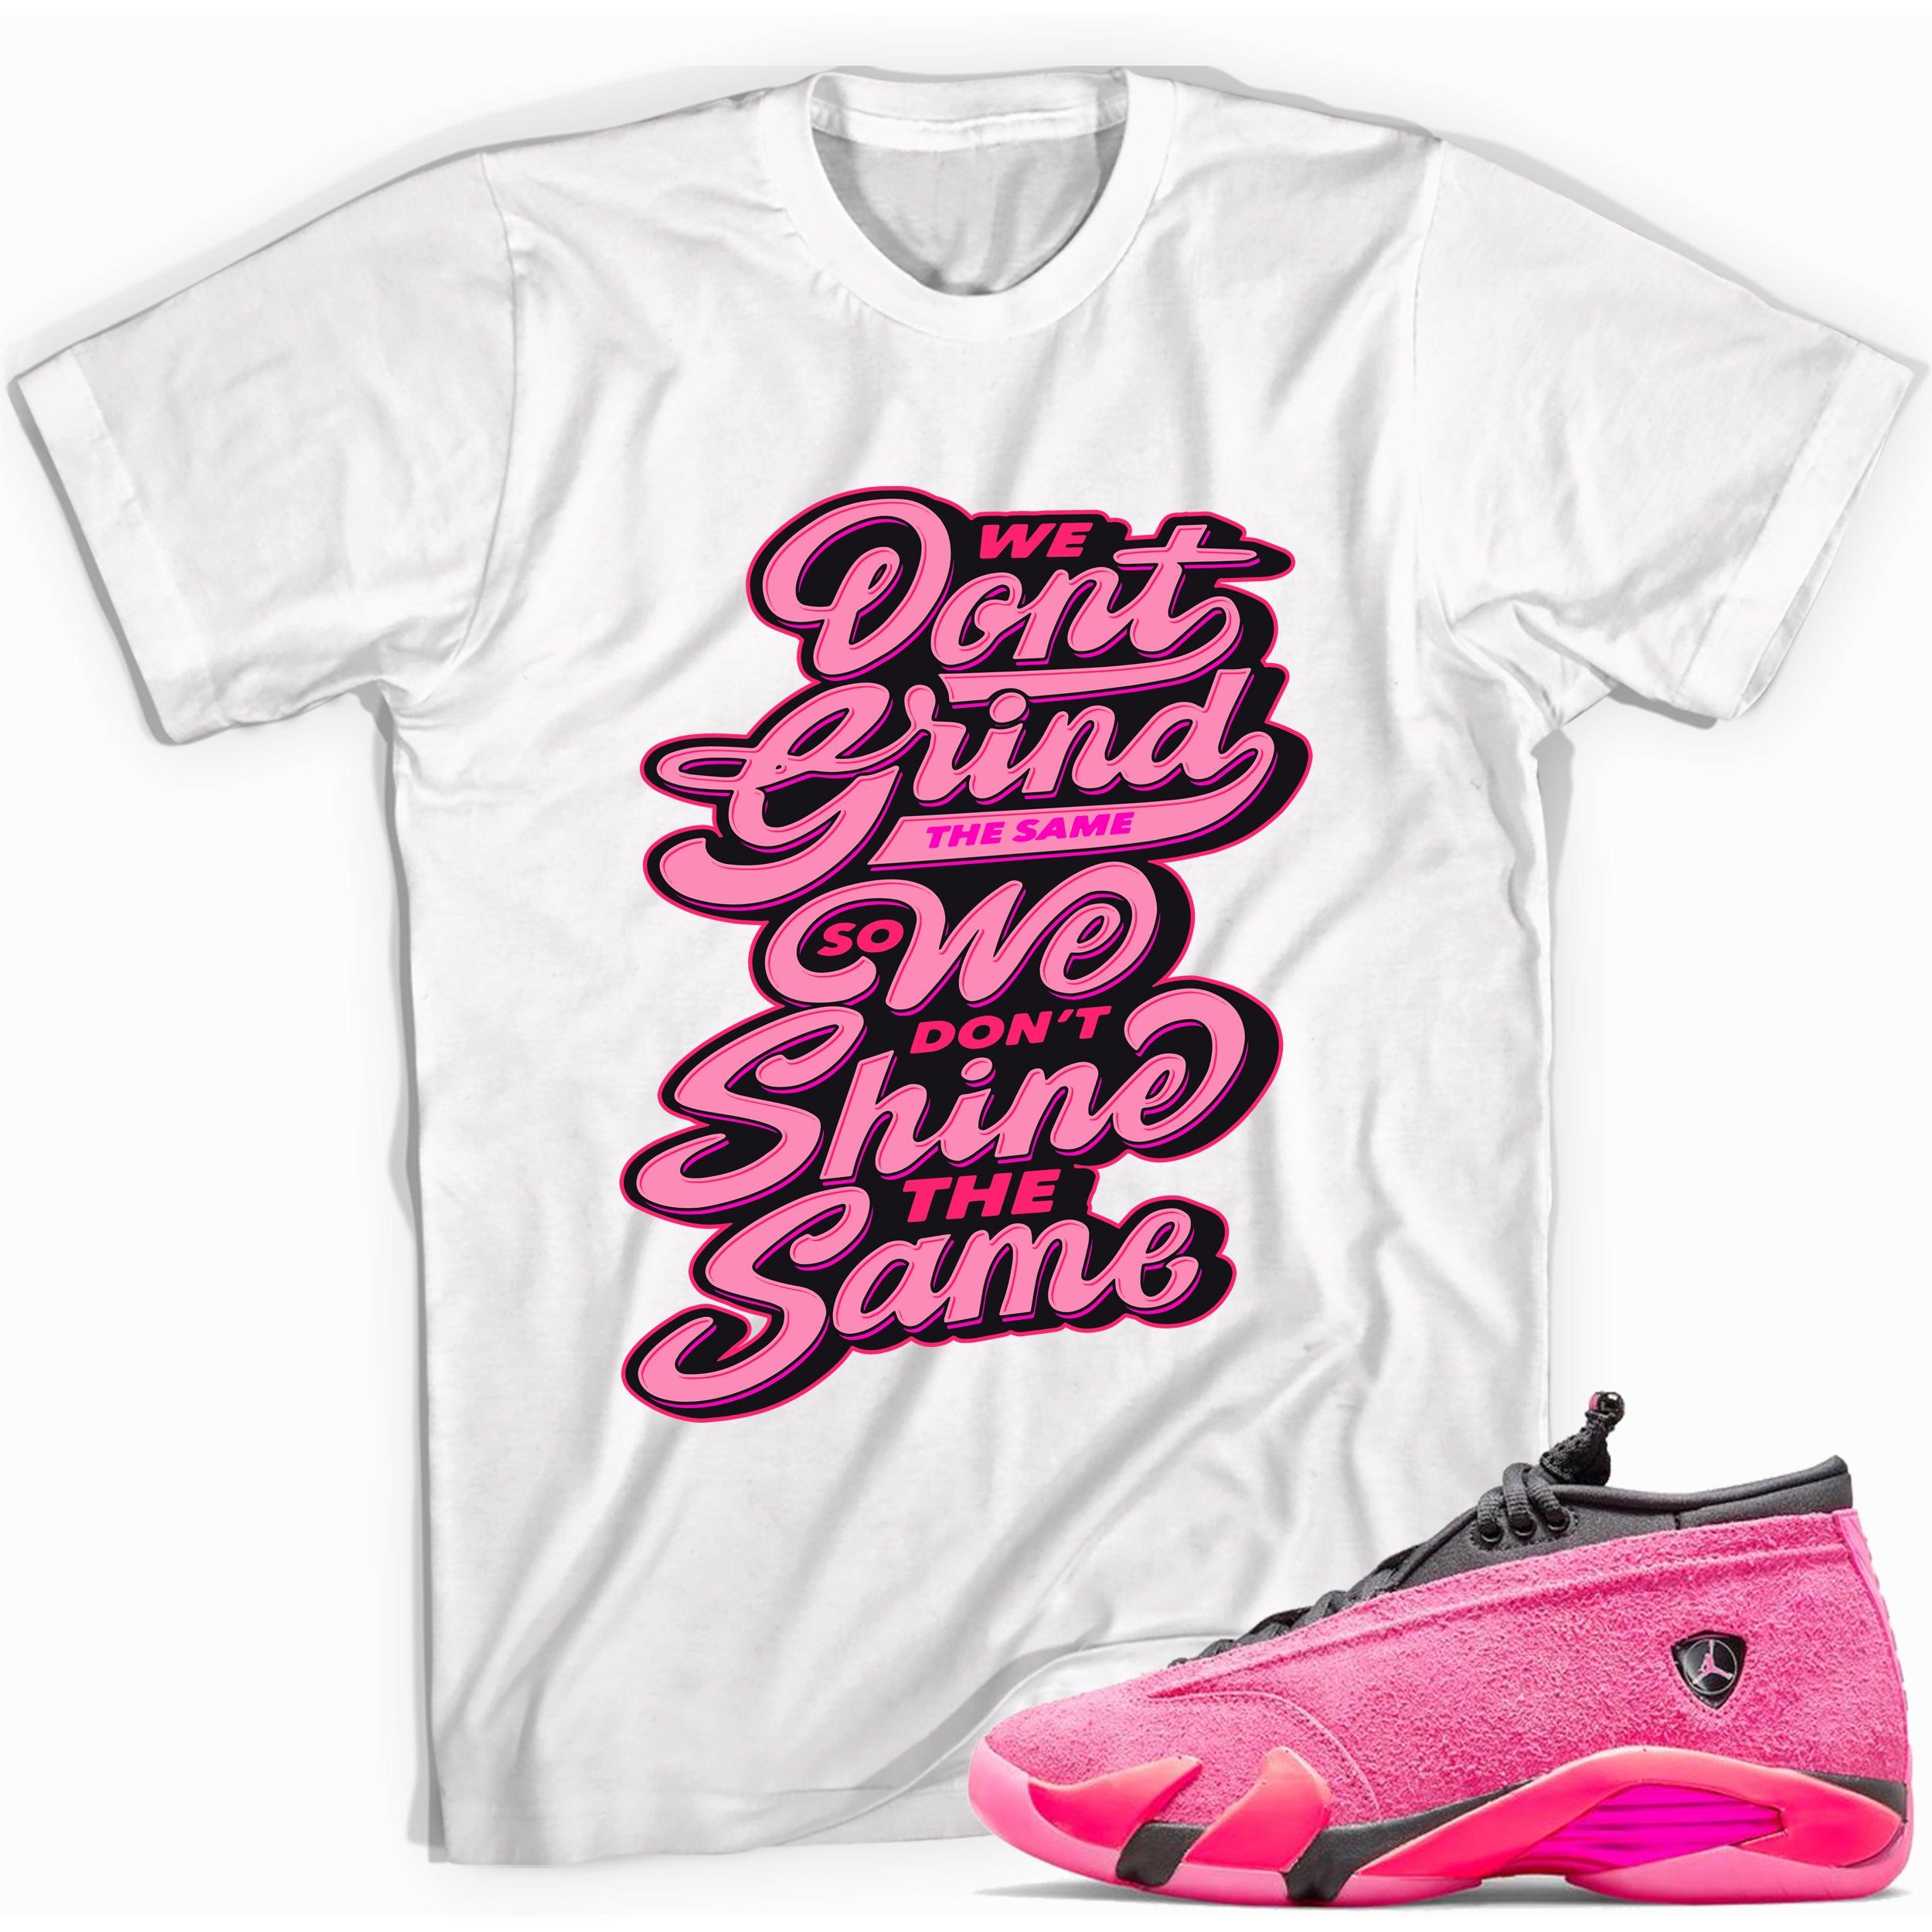 Grind and Shine Shirt Jordan 14s Low Shocking Pink photo